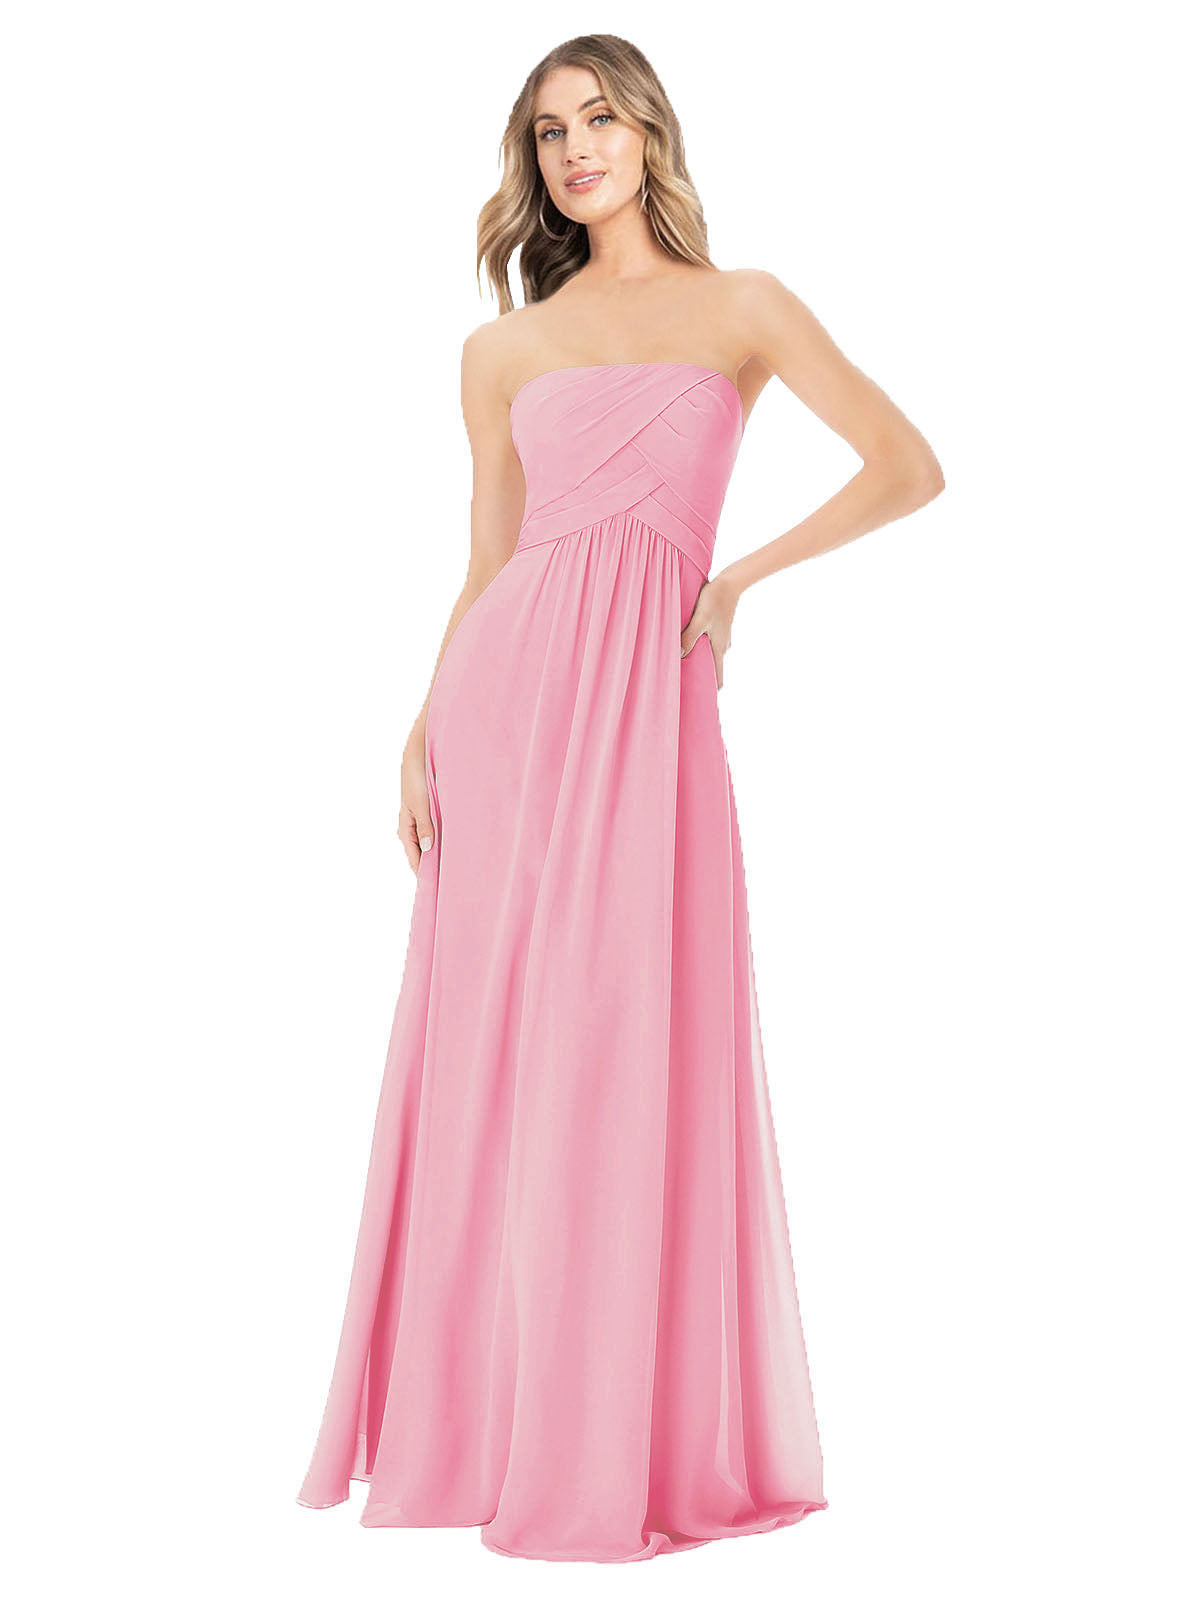 Hot Pink A-Line Strapless Sleeveless Long Bridesmaid Dress Ciel